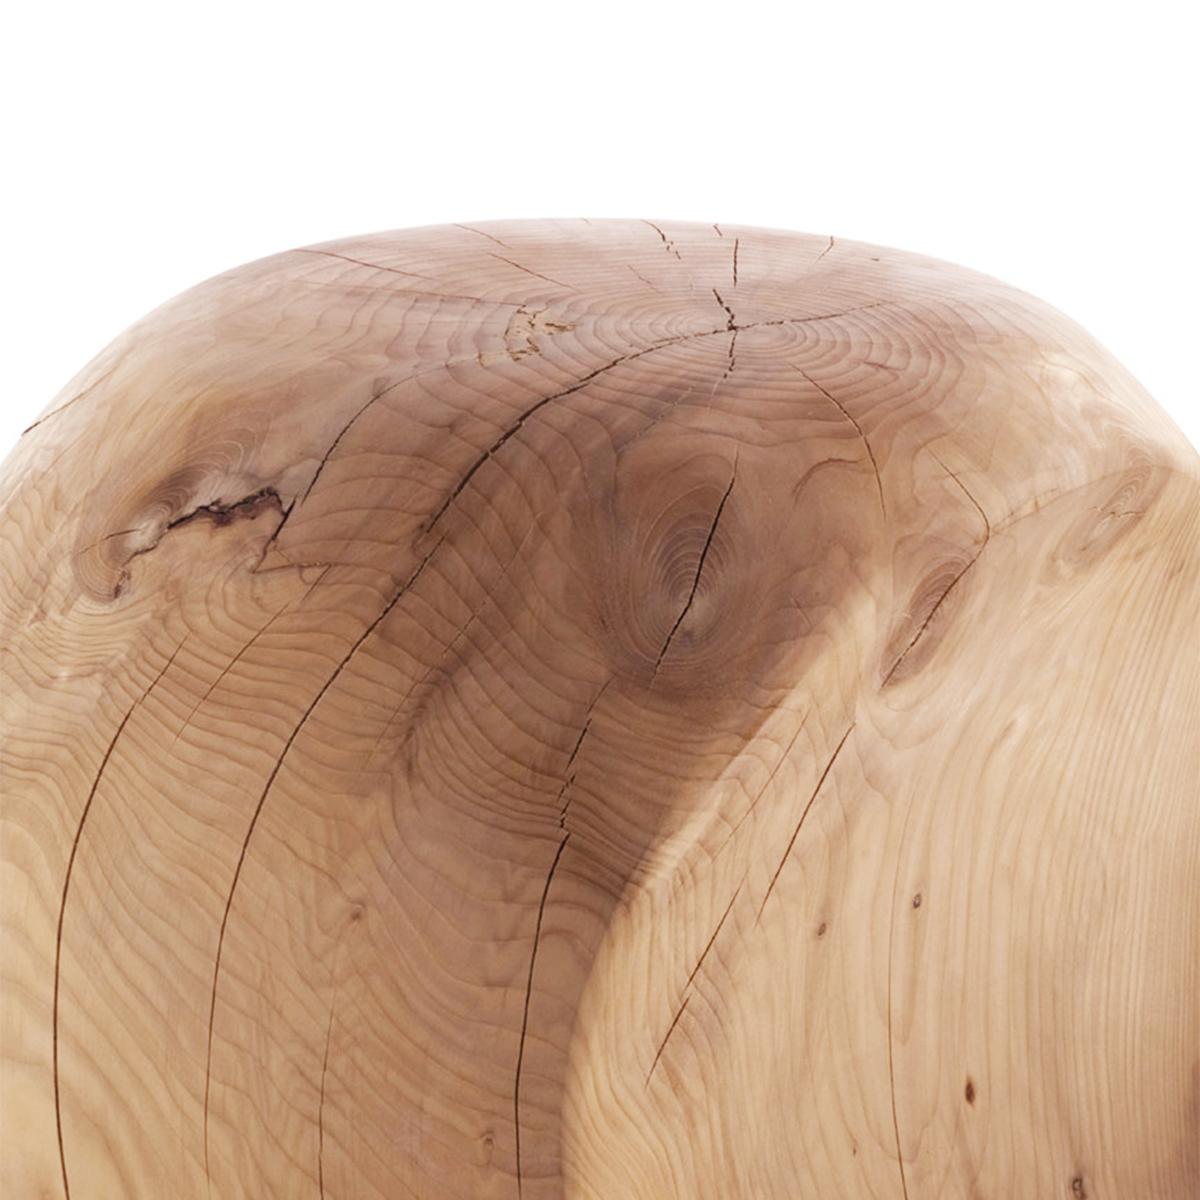 Hocker Cocoona Form 2 in massivem natürlichen aromatischen
zedernholz. Hergestellt in einem Block aus Zedernholz.
Behandelt mit natürlichen Pinienextrakten.
Kann für die 3 Seiten des Hockers verwendet werden.
Massive Zedernholz enthalten Bewegung,